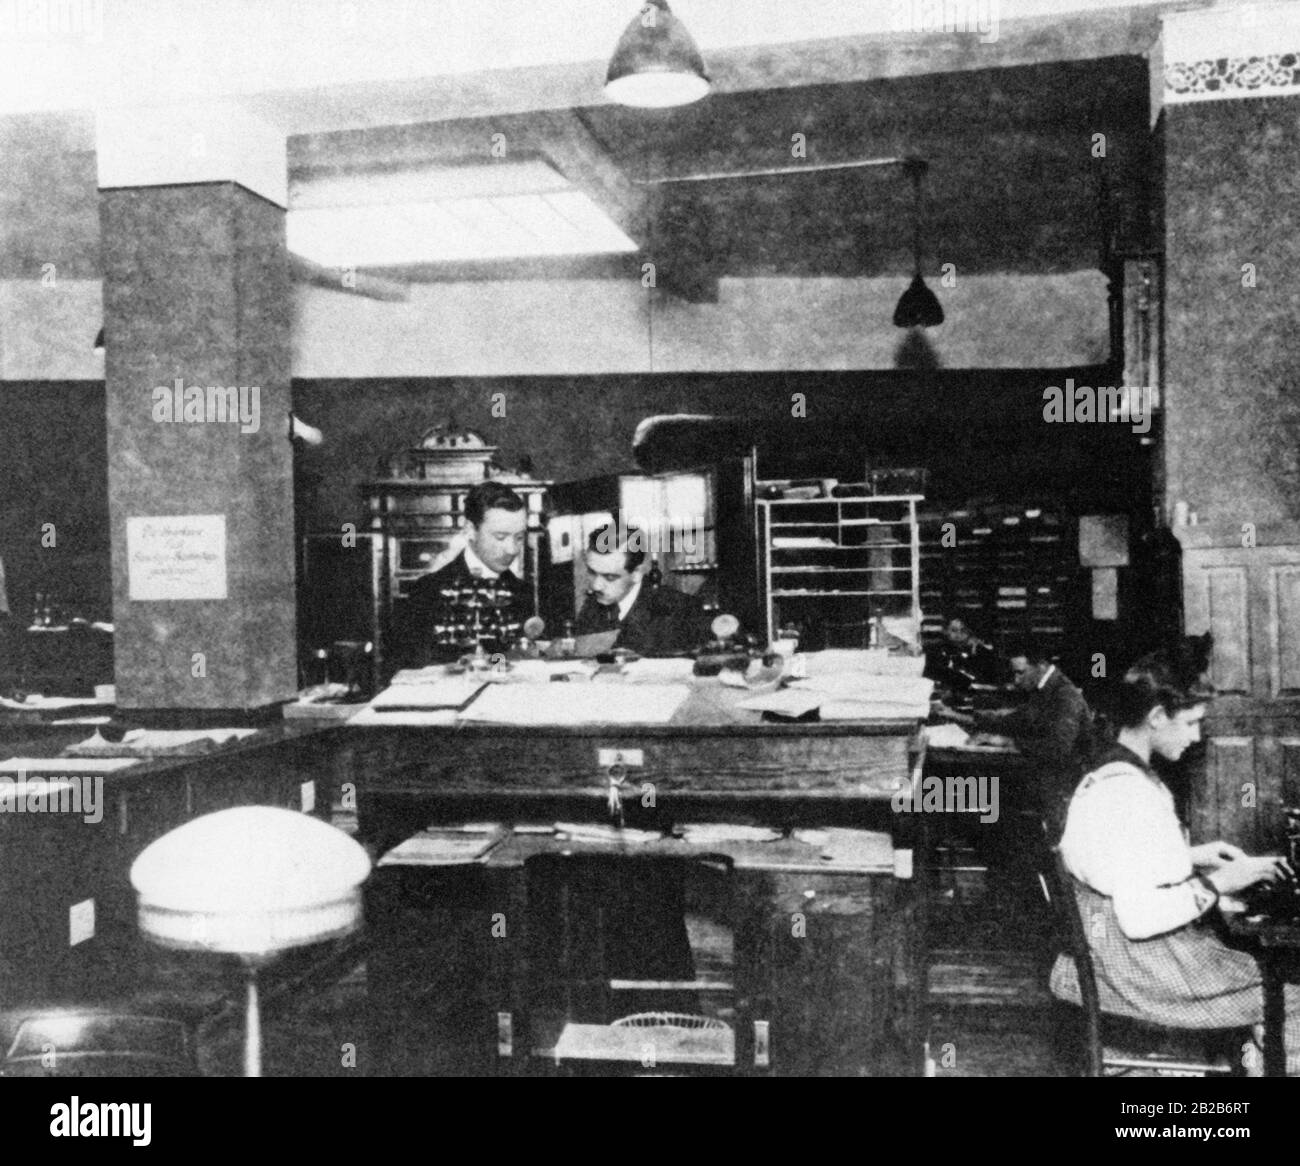 Das Foto zeigt Mitarbeiter in einem typischen Büroumfeld um die Jahrhundertwende. Auf der rechten Seite des Bildes befindet sich eine Sekretärin, die an einer Schreibmaschine arbeitet, was im frühen 20. Jahrhundert eine recht verbreitete Szene war. Stockfoto